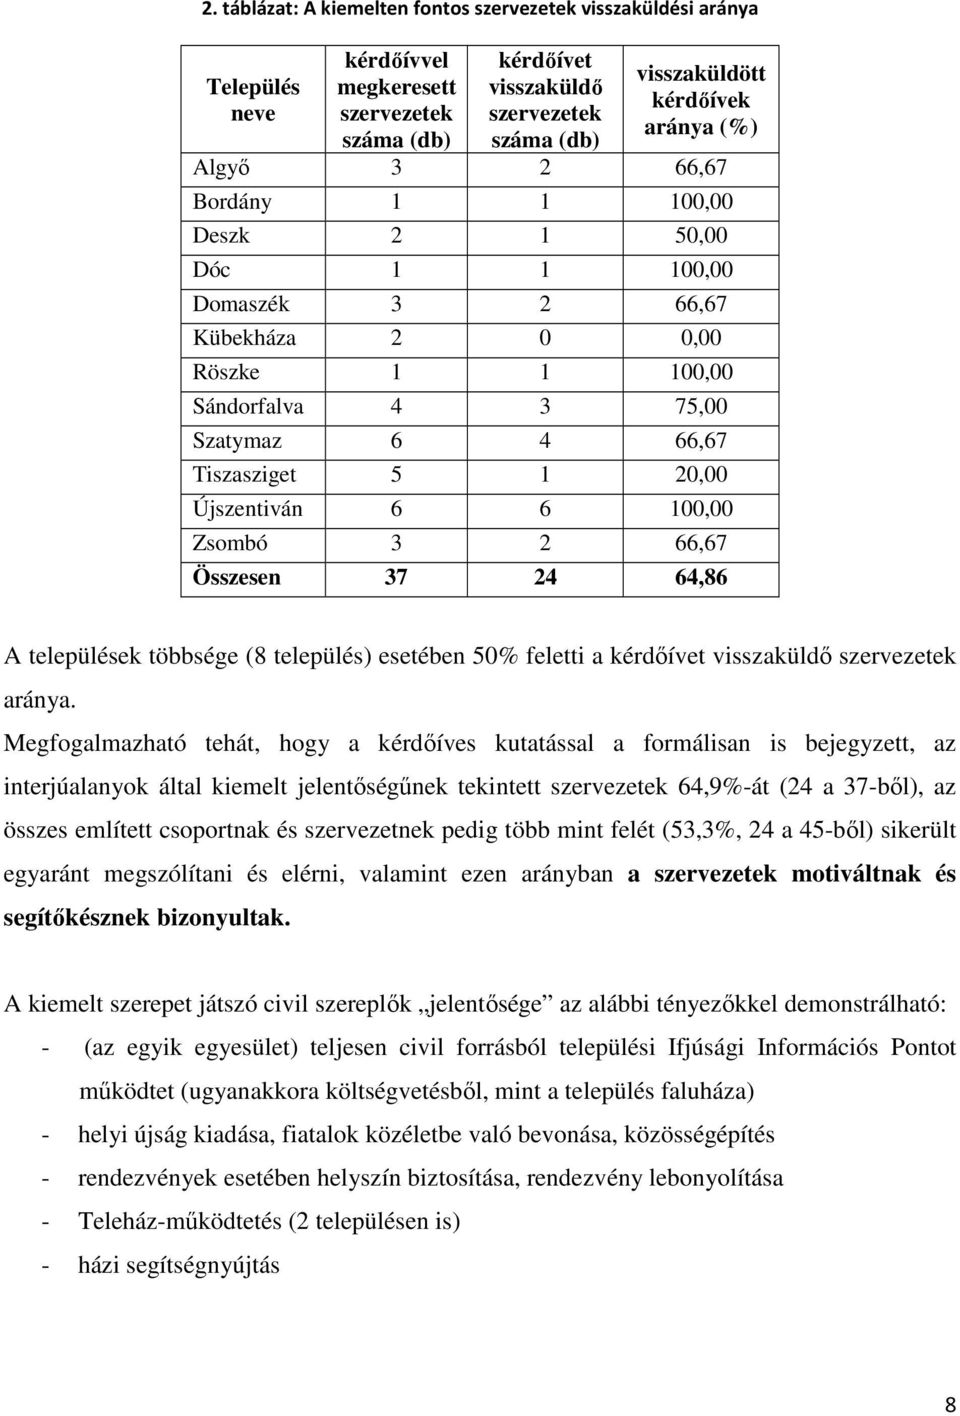 Újszentiván 6 6 100,00 Zsombó 3 2 66,67 Összesen 37 24 64,86 A települések többsége (8 település) esetében 50% feletti a kérdıívet visszaküldı szervezetek aránya.